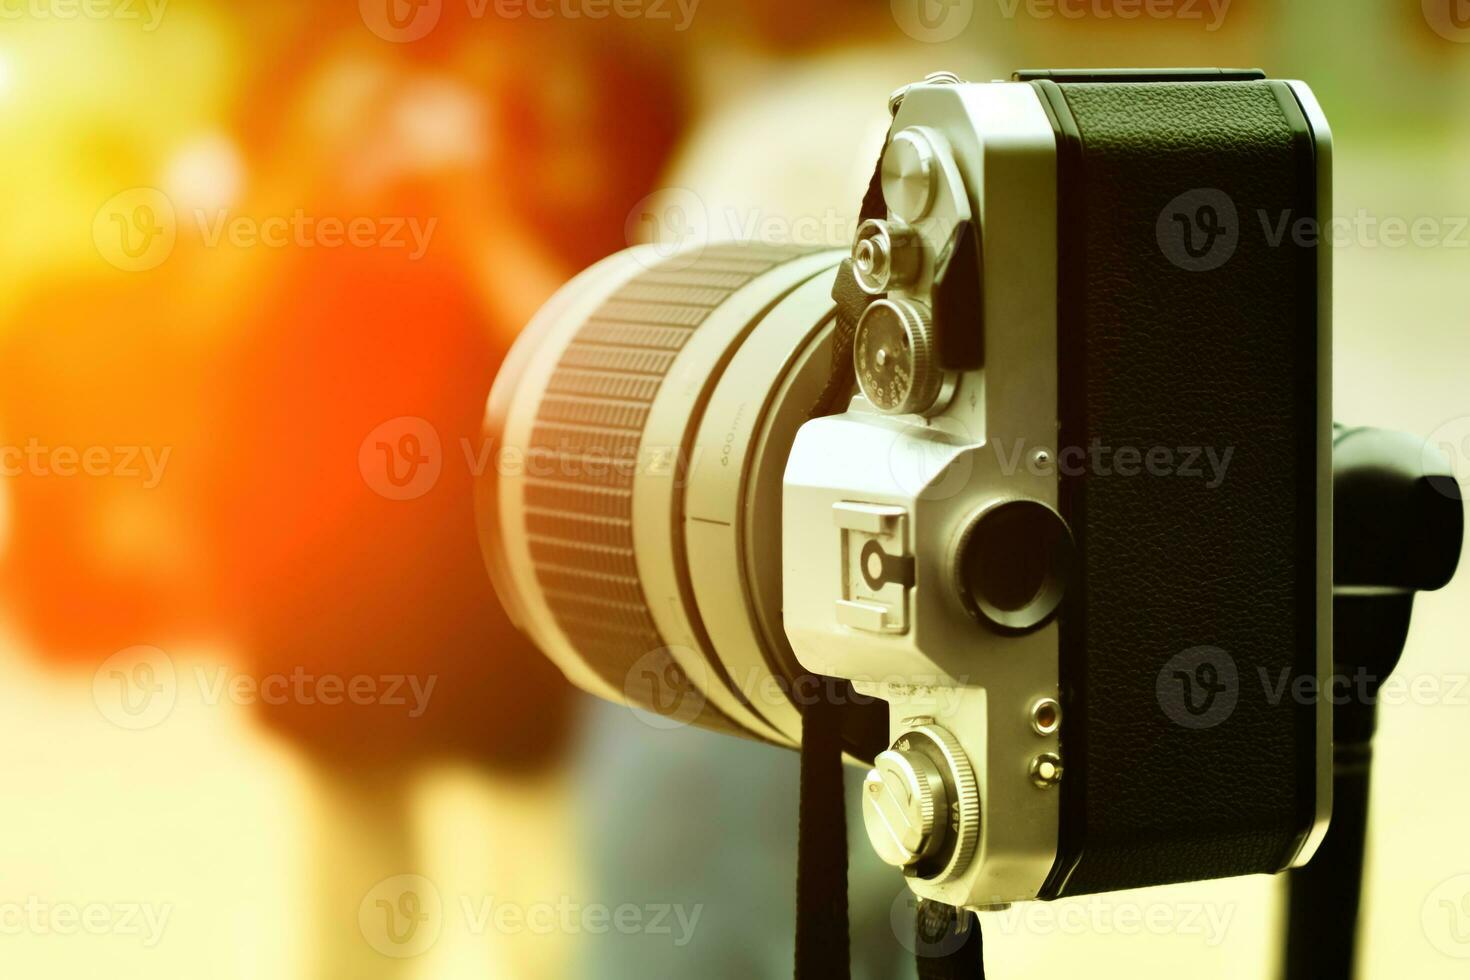 Vintage ▾ telecamera quello ancora usi film media, Manuale operazione e molto esotico, pieno di ricordi foto